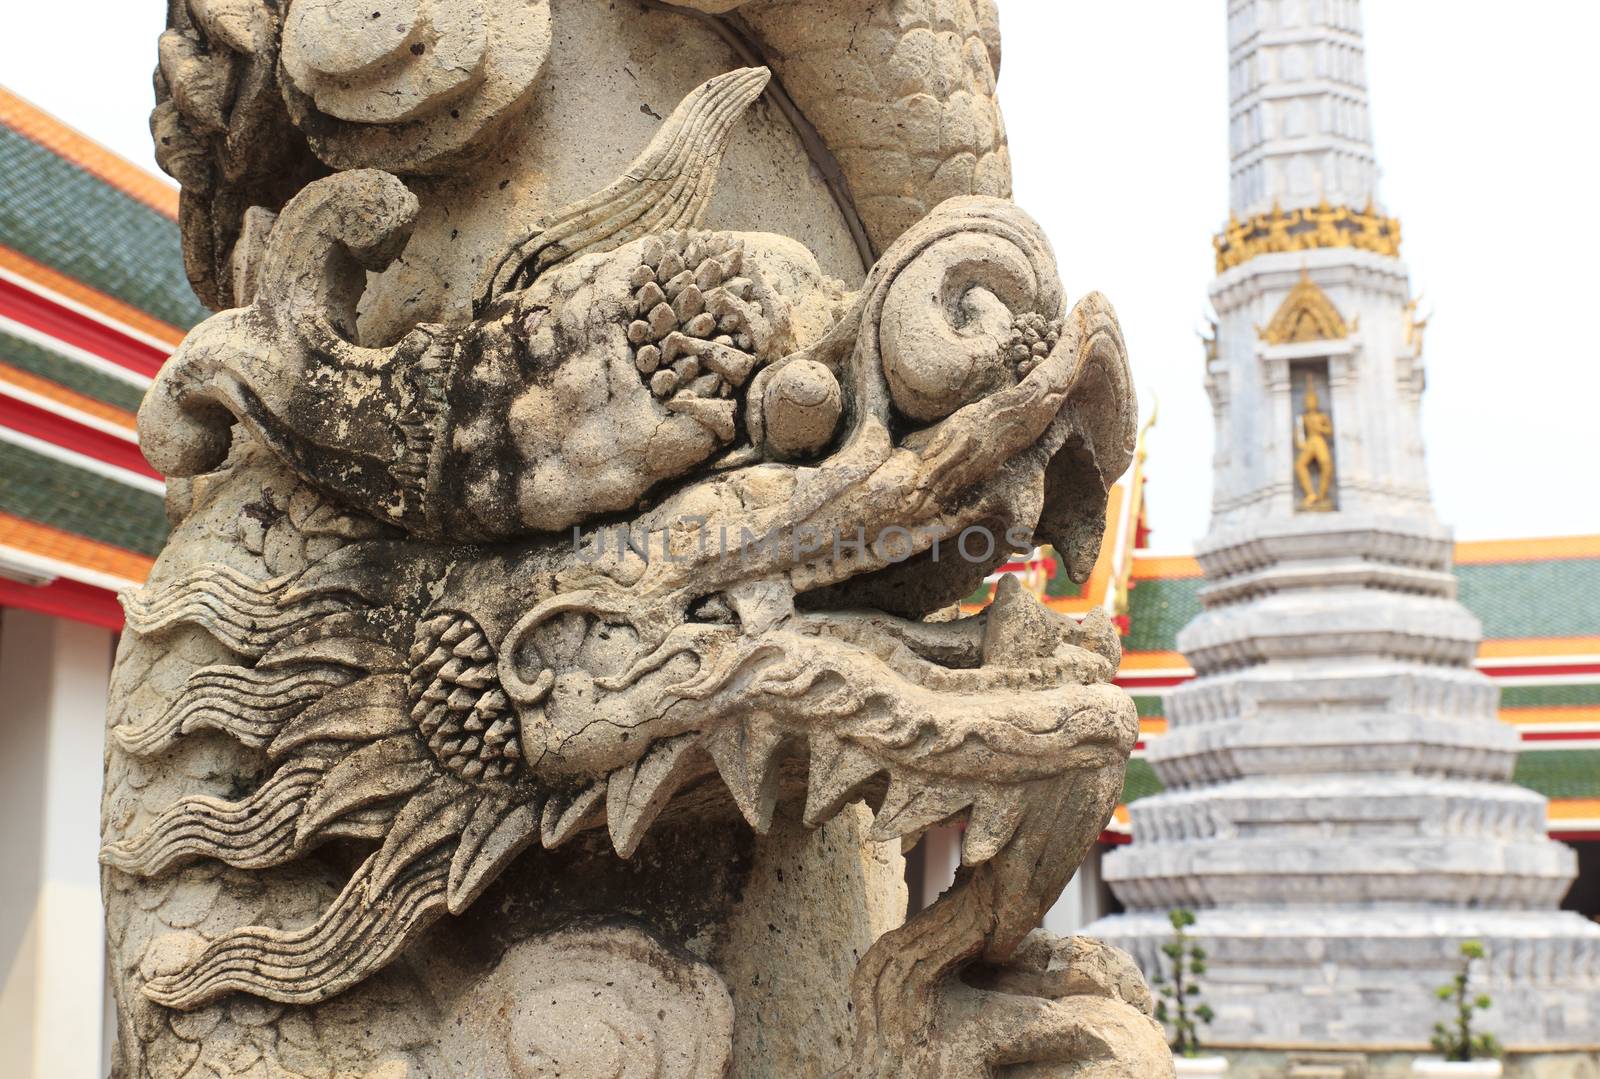 Thai style dragon statue at Wat Pho in bangkok, thailand.